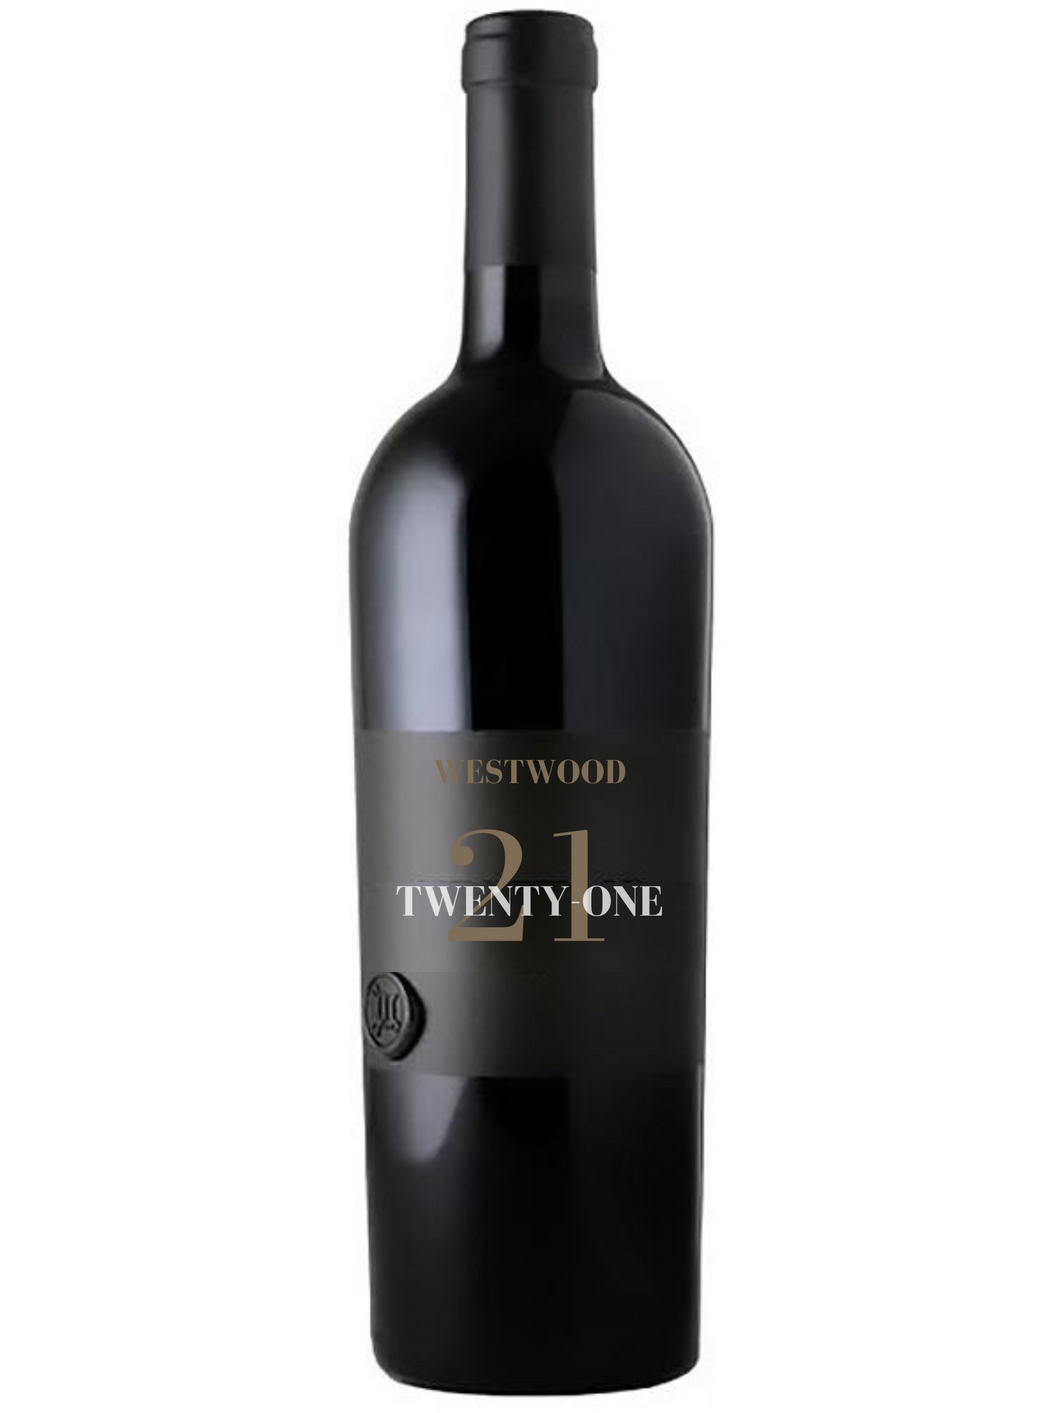 2017 Westwood “Twenty One” Proprietary Red Wine, Sonoma California